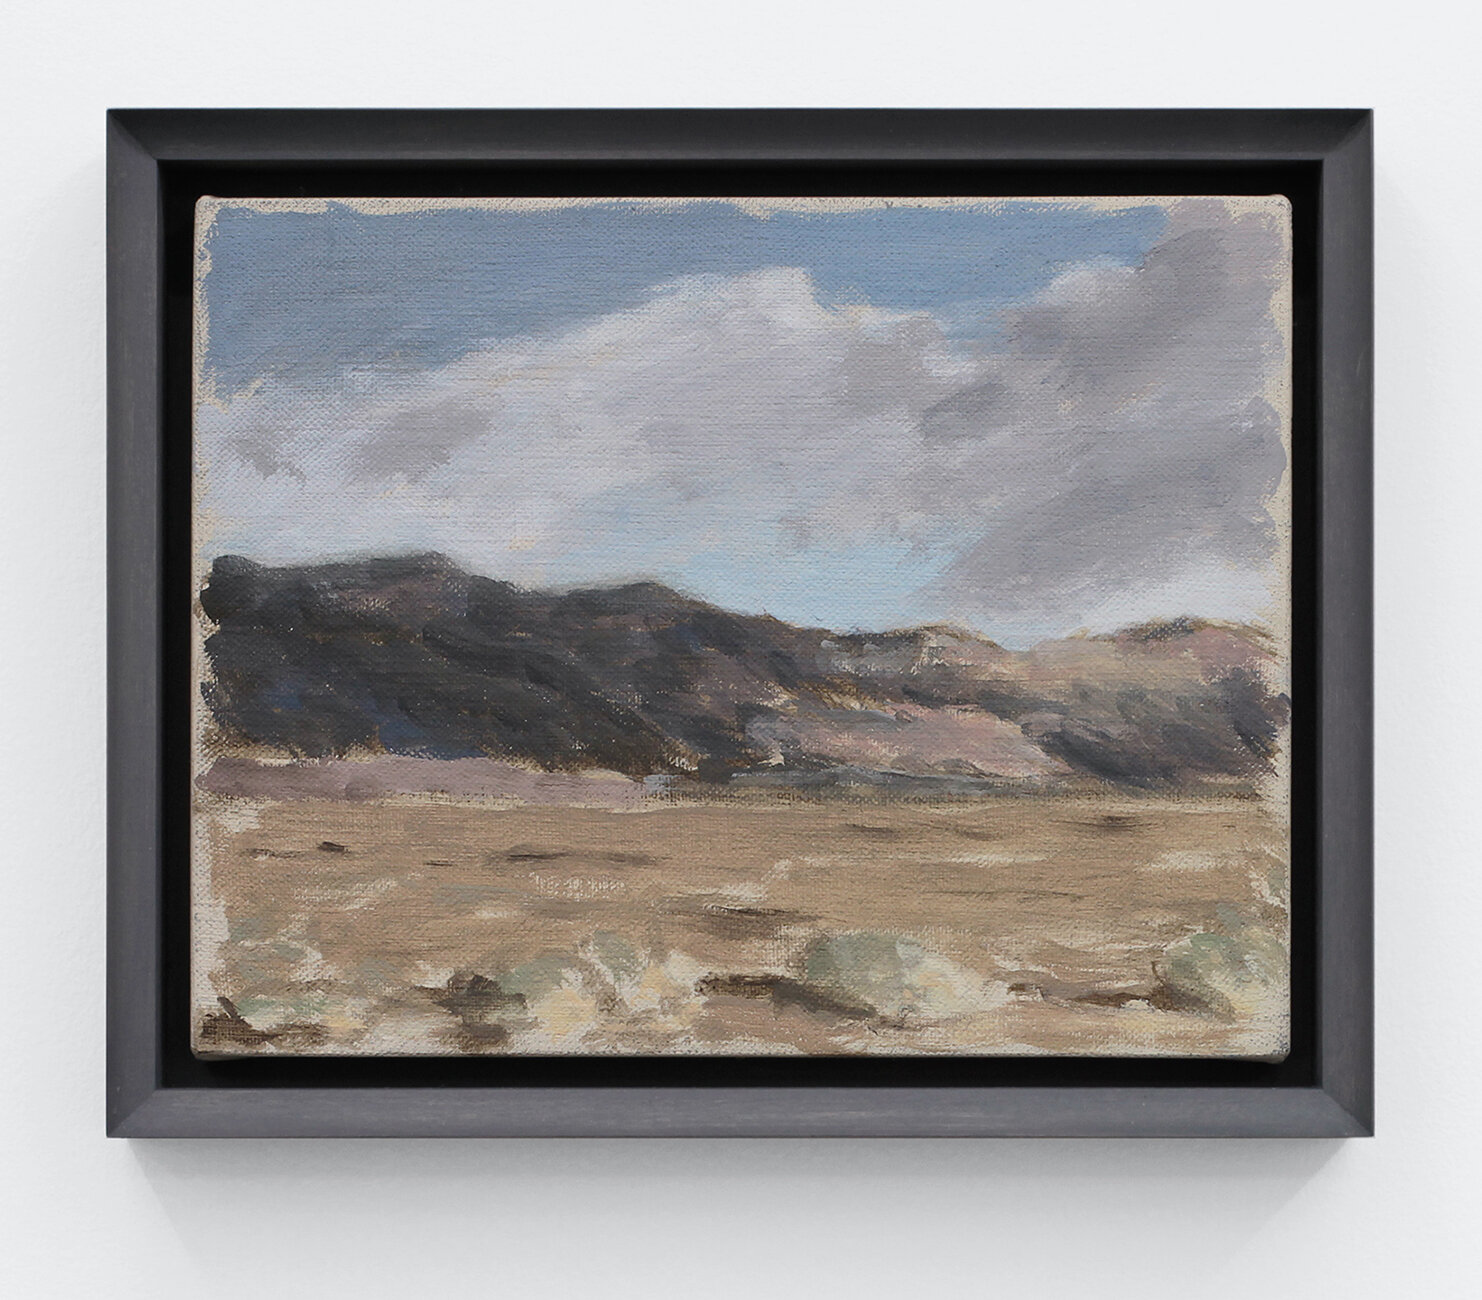  Sermon Notes - Landscape I  2018  Distemper on canvas  7 x 9 inches  (17.78 x 22.86 cm)     